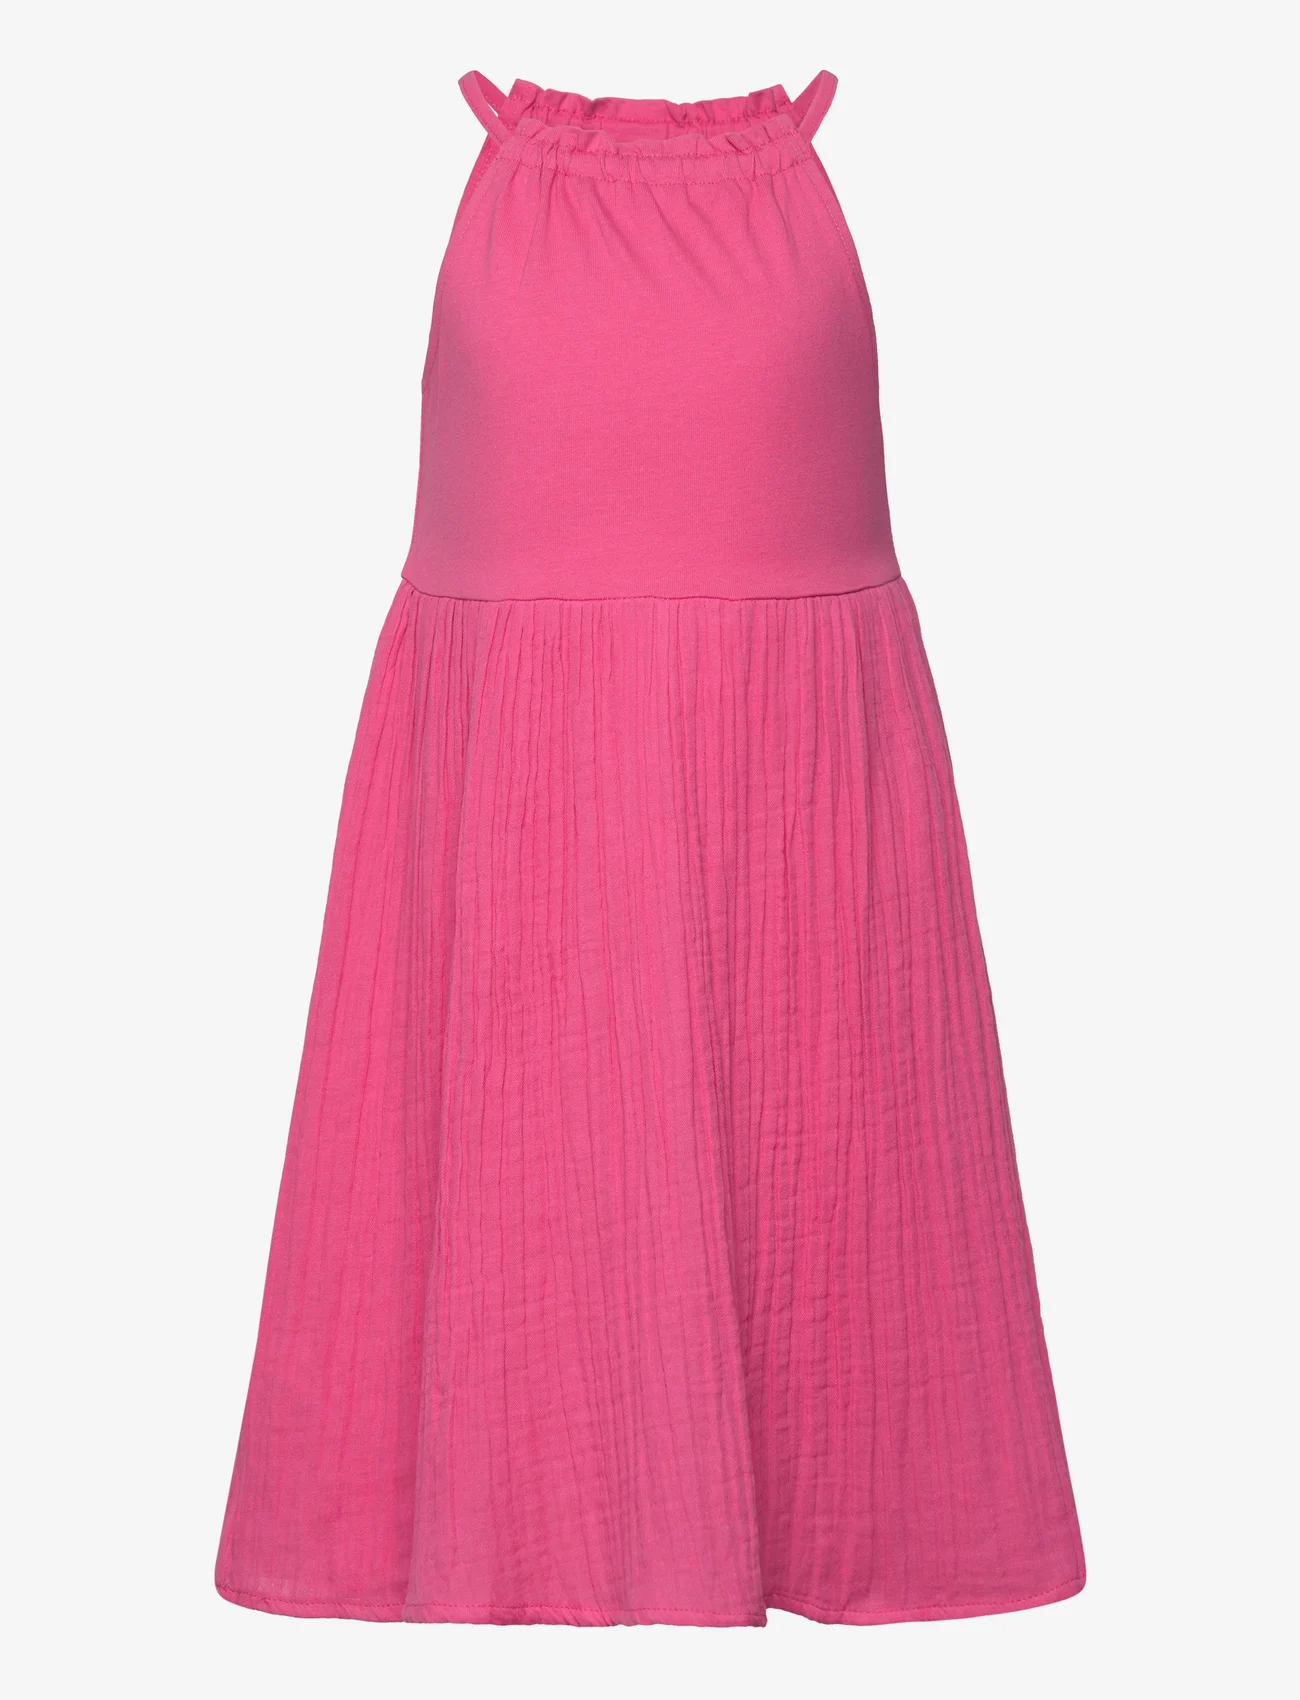 Mango - Cotton-blend dress - Ärmlösa vardagsklänningar - bright pink - 0